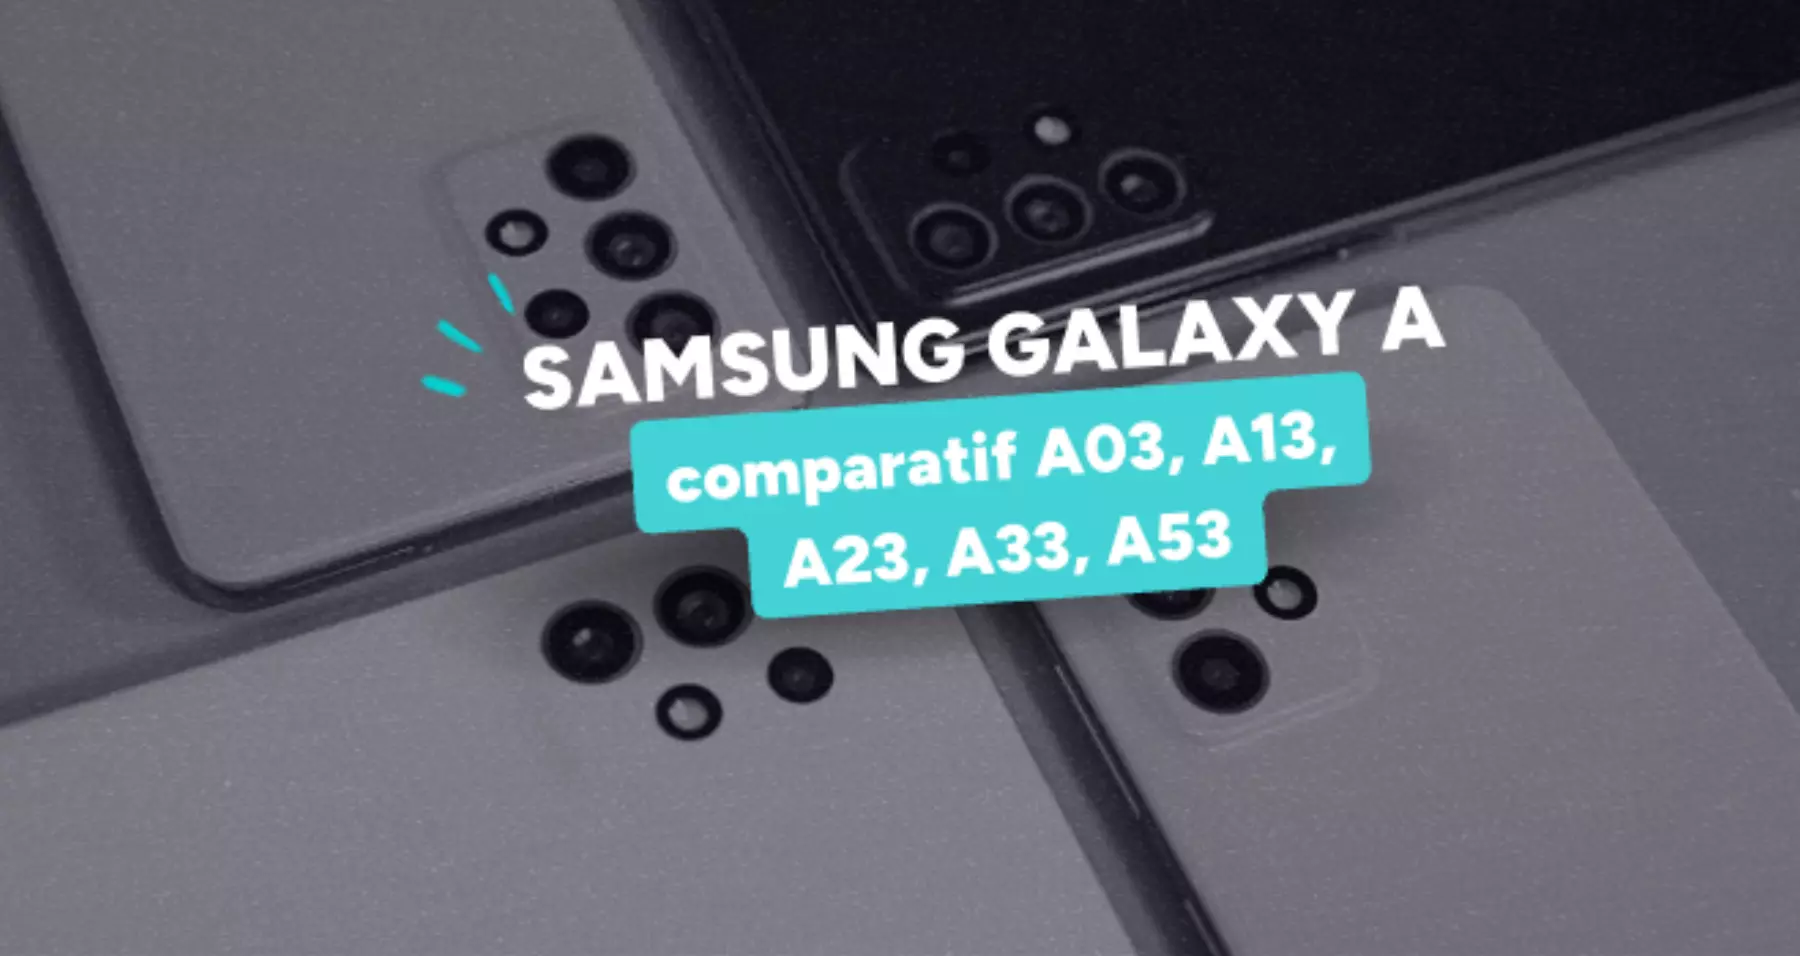 Samsung Galaxy A23 5G Noir (4 Go / 64 Go) · Reconditionné